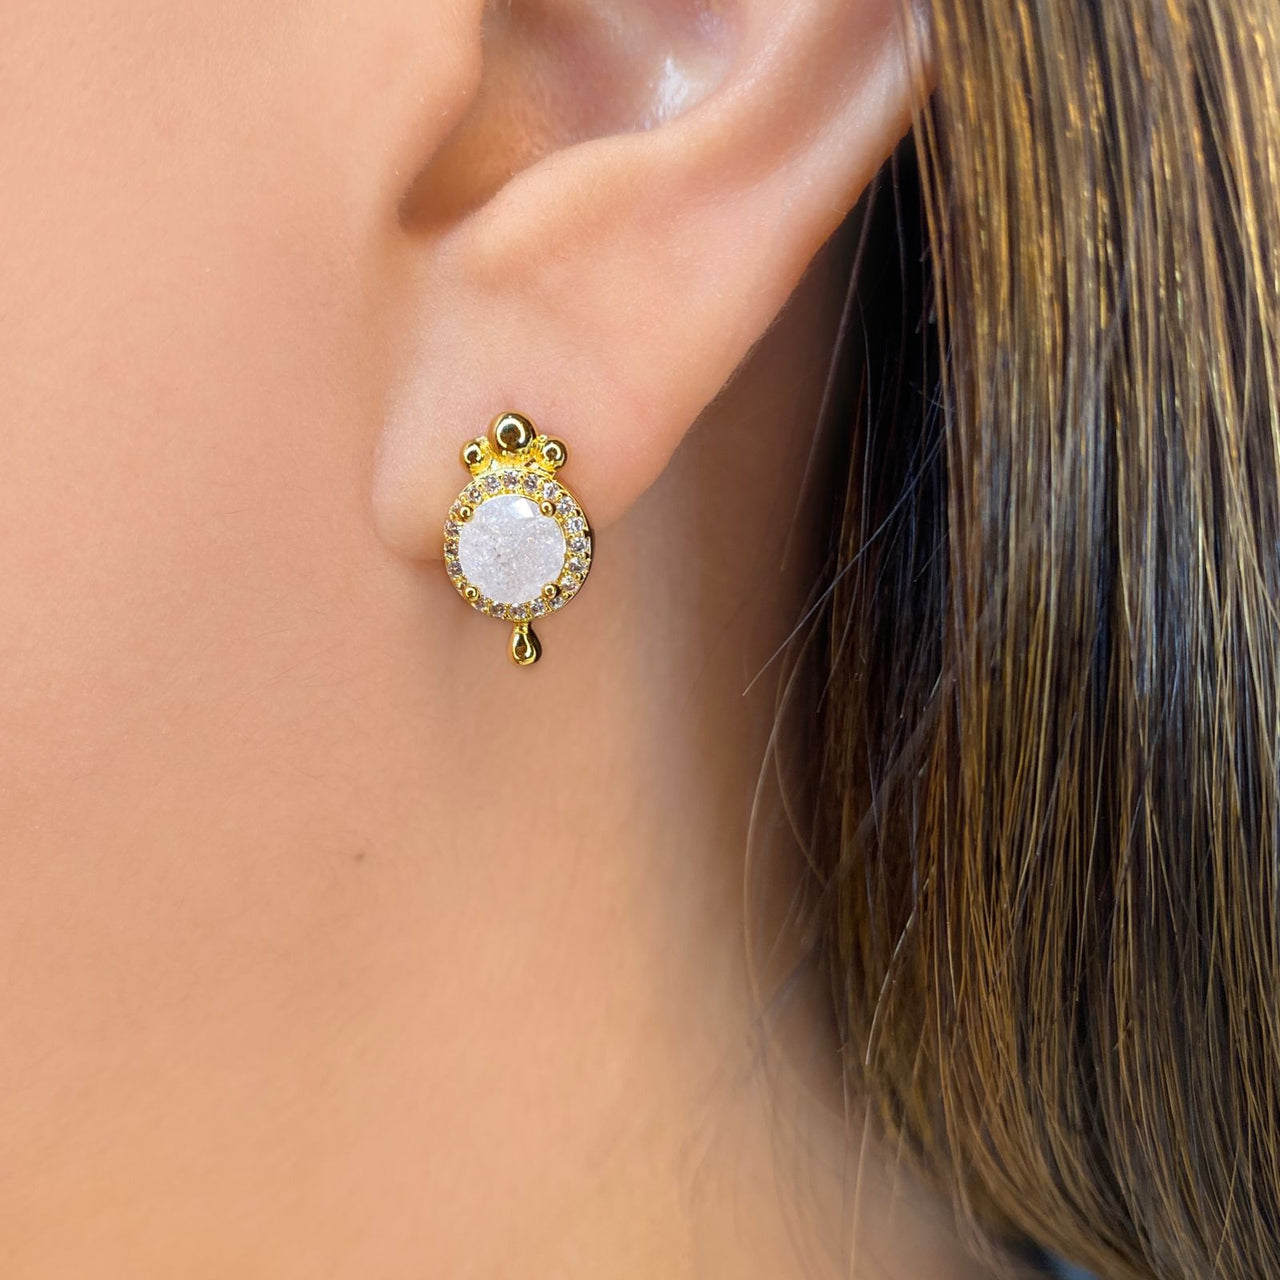 Mirror-shaped popcorn earring (944)